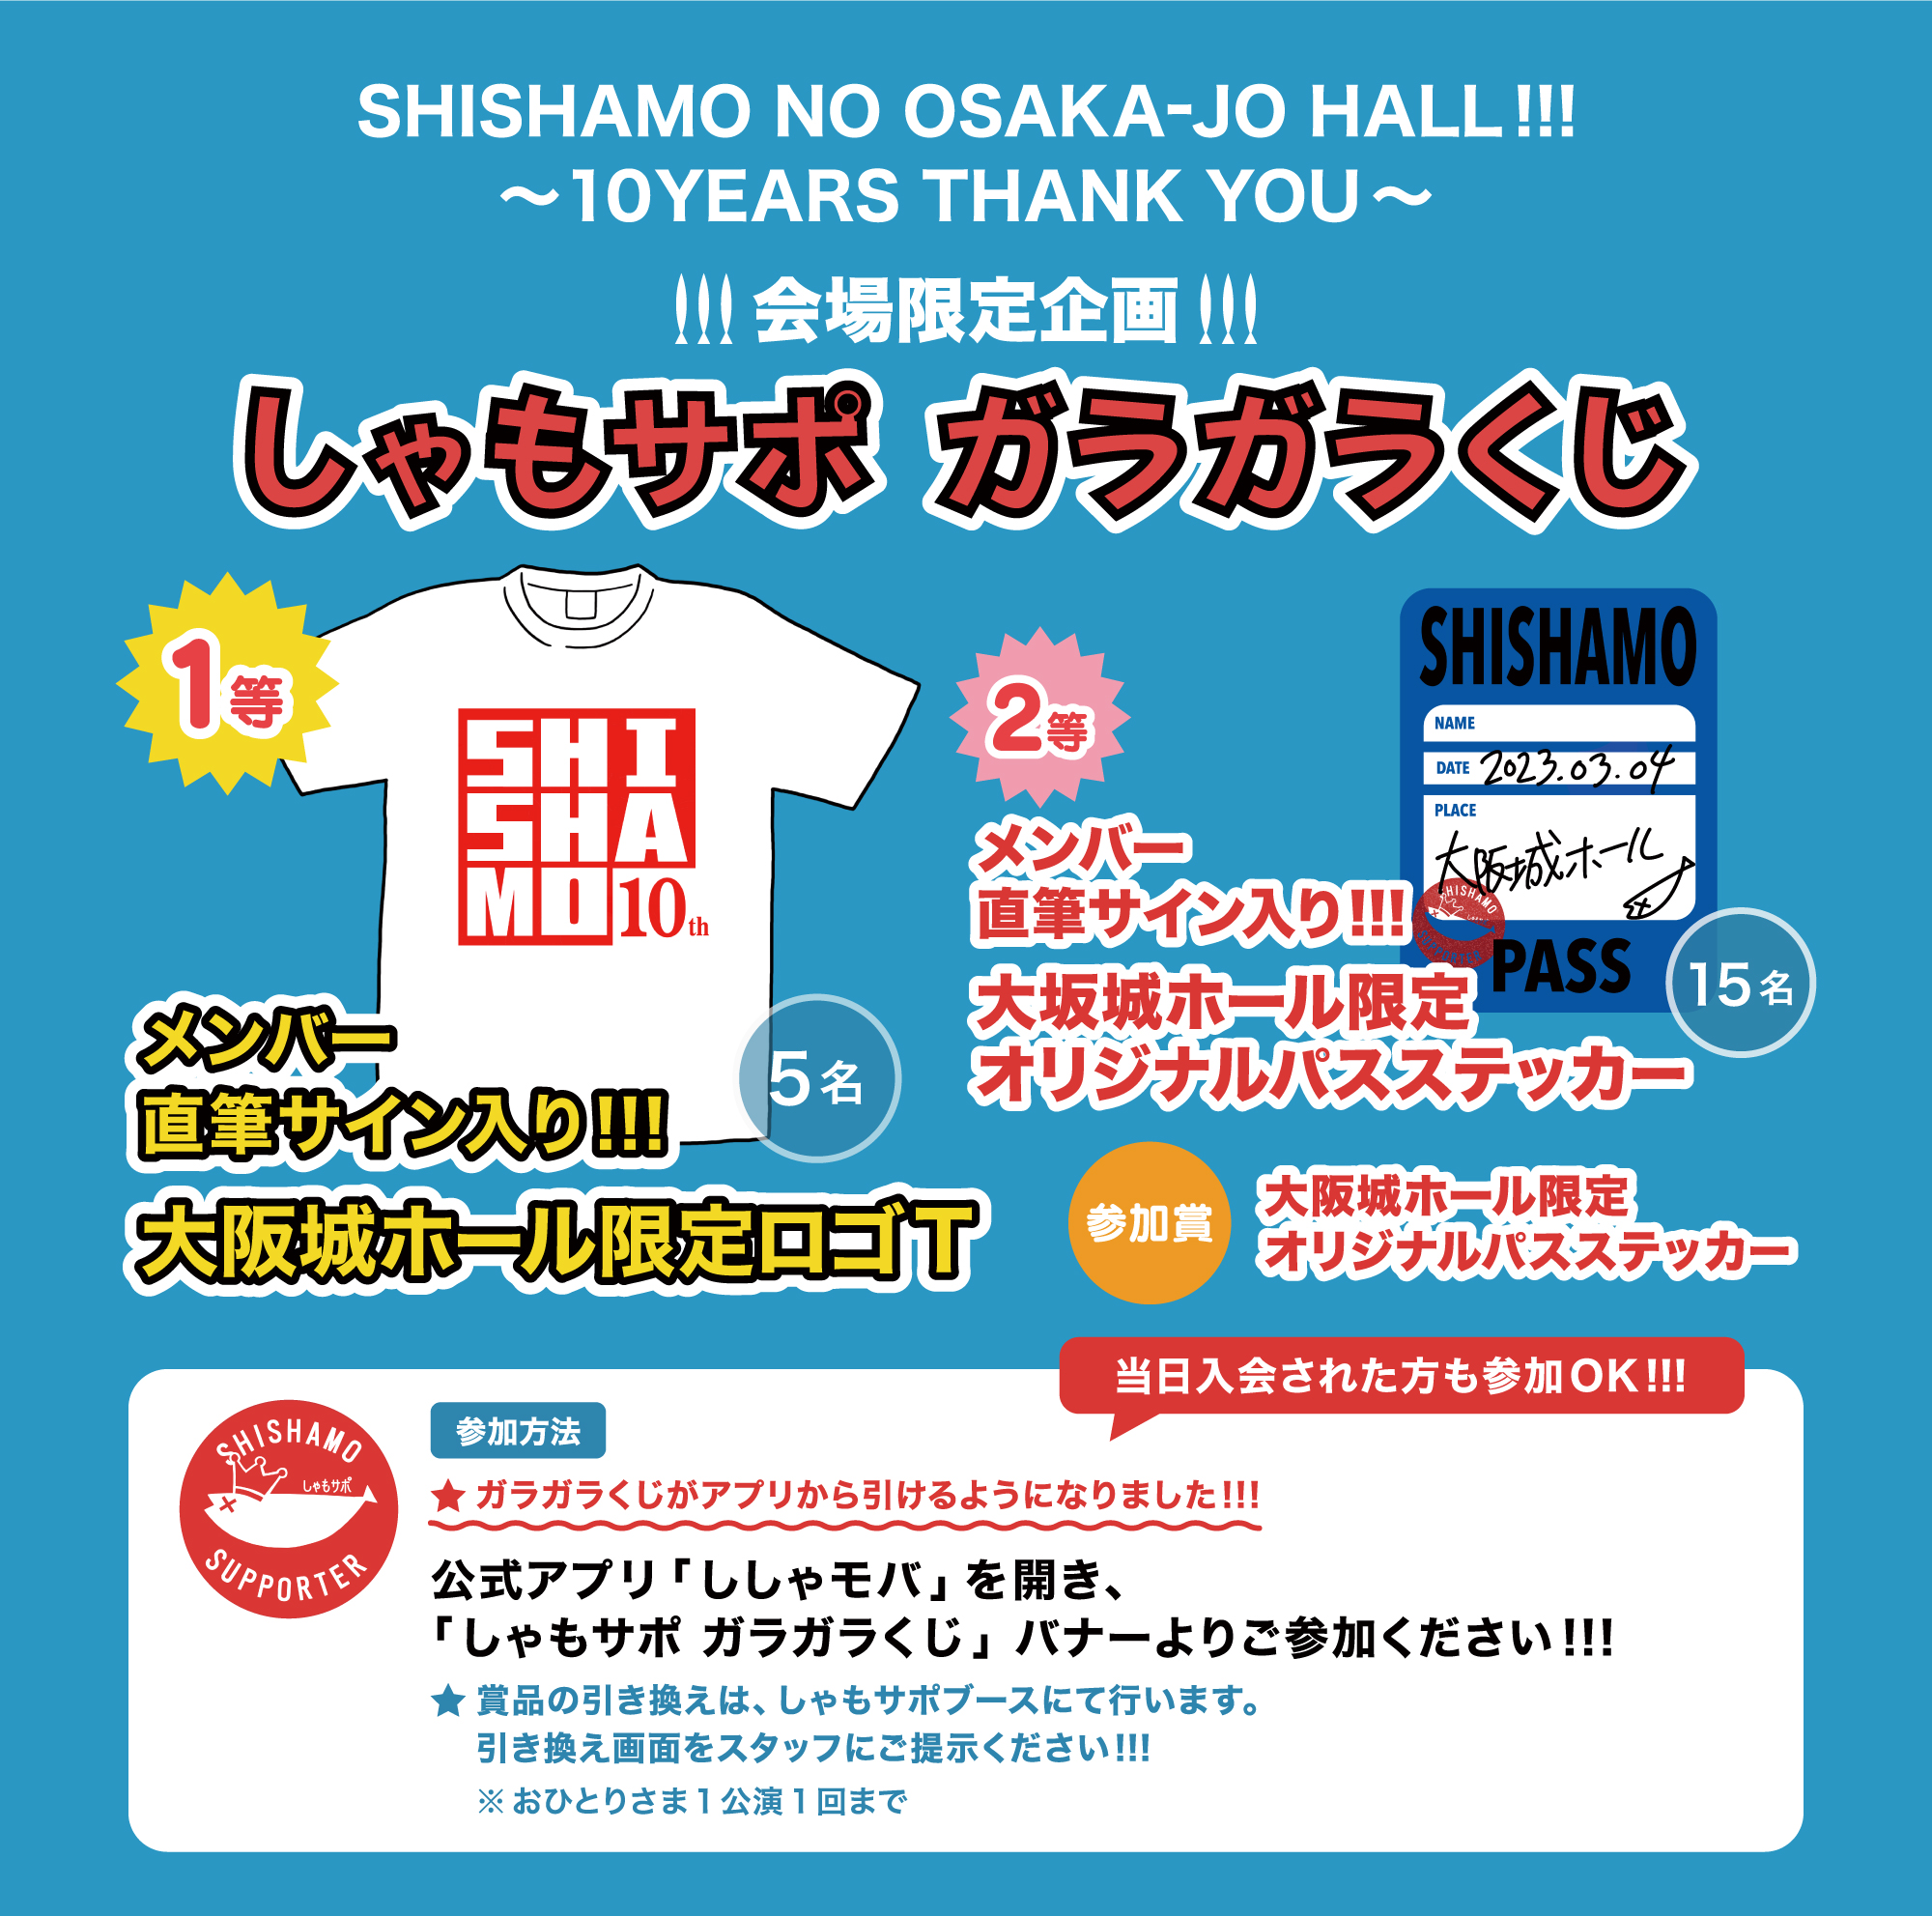 SHISHAMO NO OSAKA-JO HALL!!! 〜10YEARS THANK YOU〜 しゃもサポ ガラガラくじ 開催!!!｜ SHISHAMO Official Website